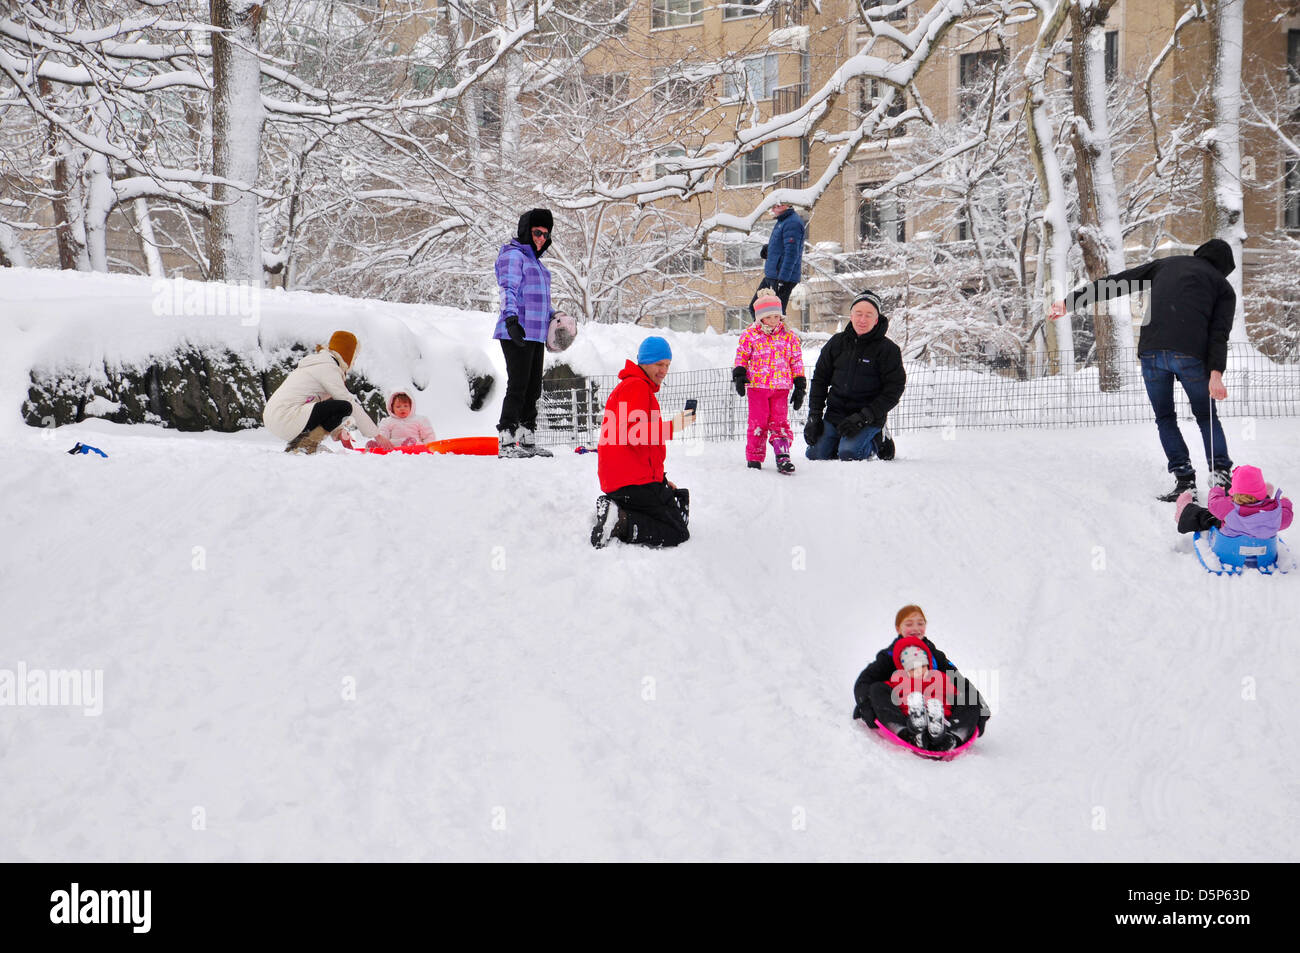 Jeunes lugeurs pendant une tempête de neige dans Central Park, New York, Manhattan, USA Banque D'Images